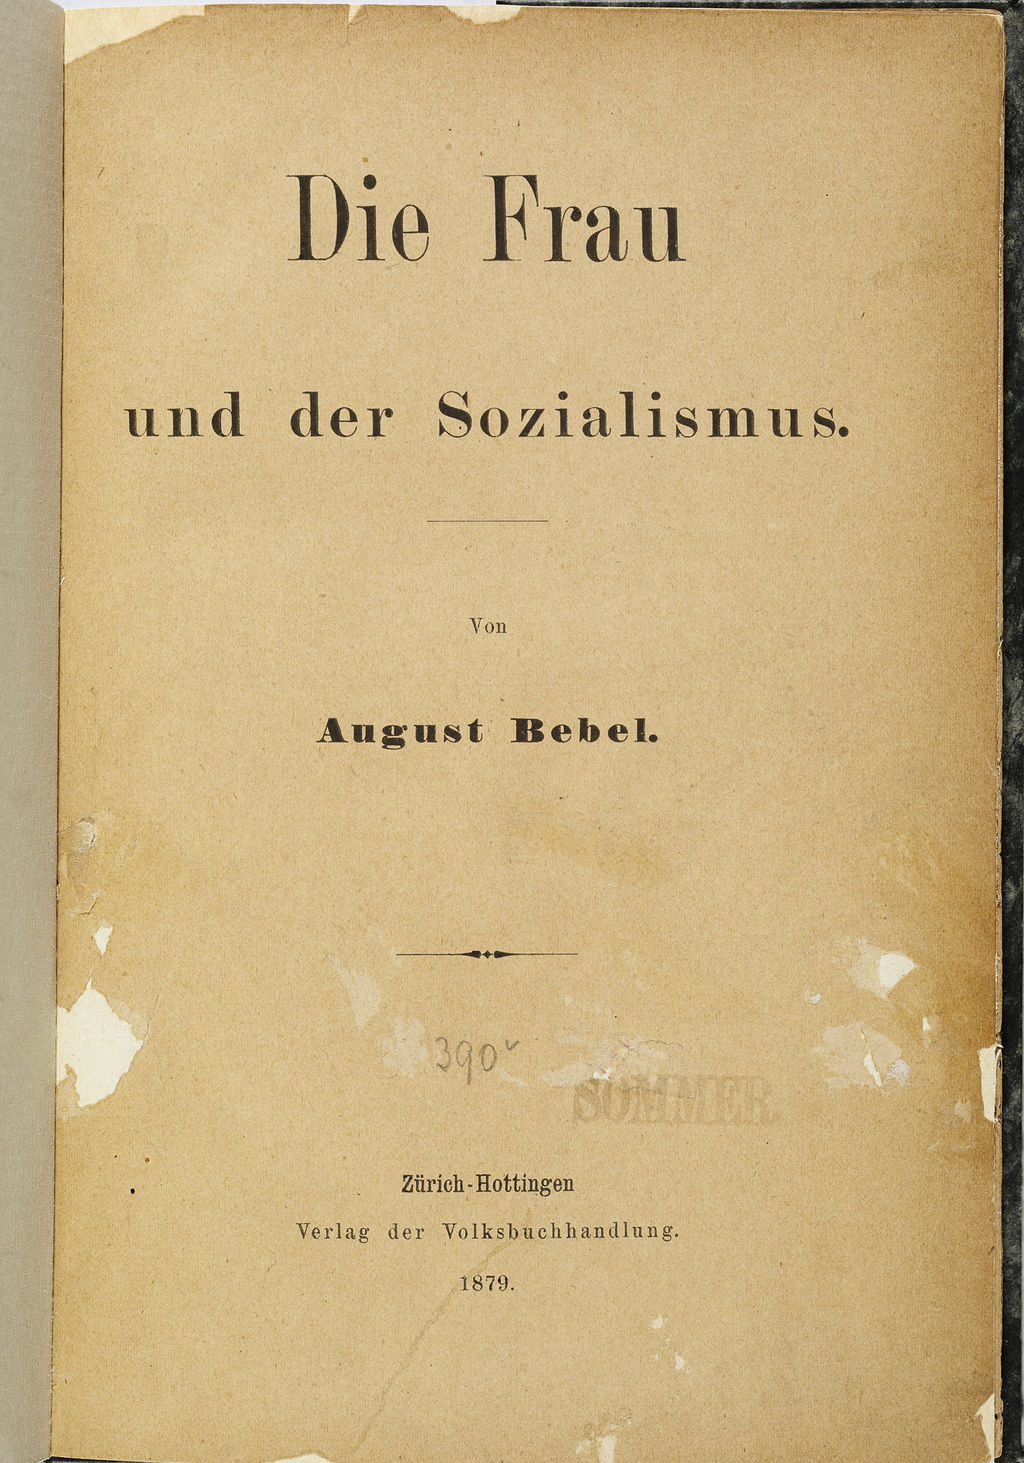 Buch: Bebel, August "Die Frau und der Sozialismus", 1879